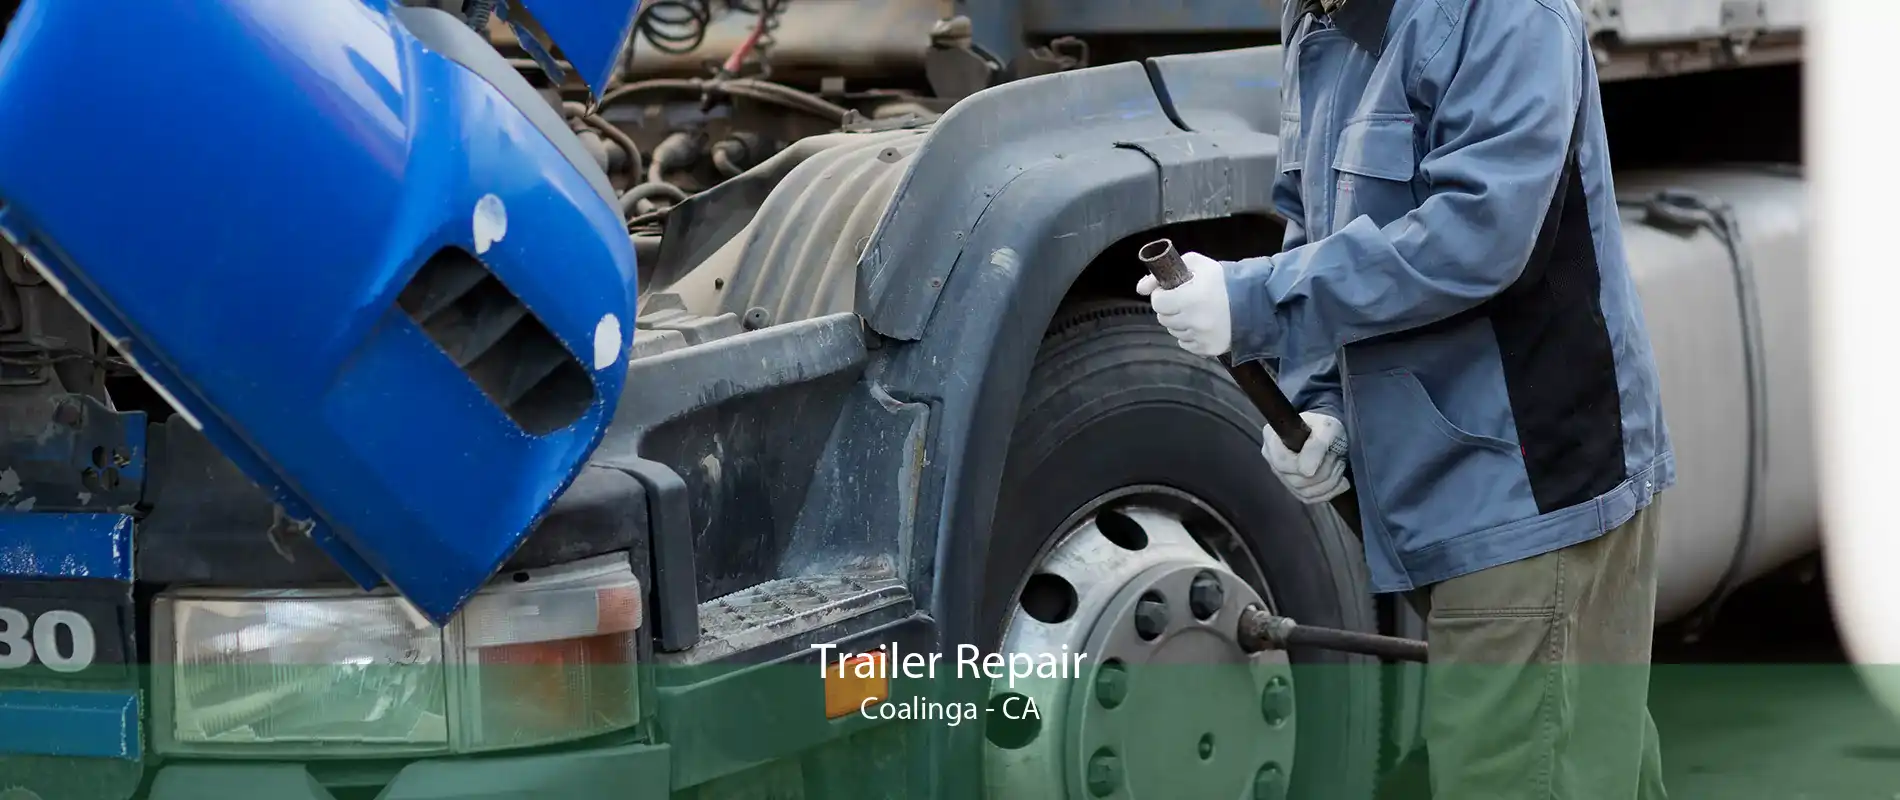 Trailer Repair Coalinga - CA